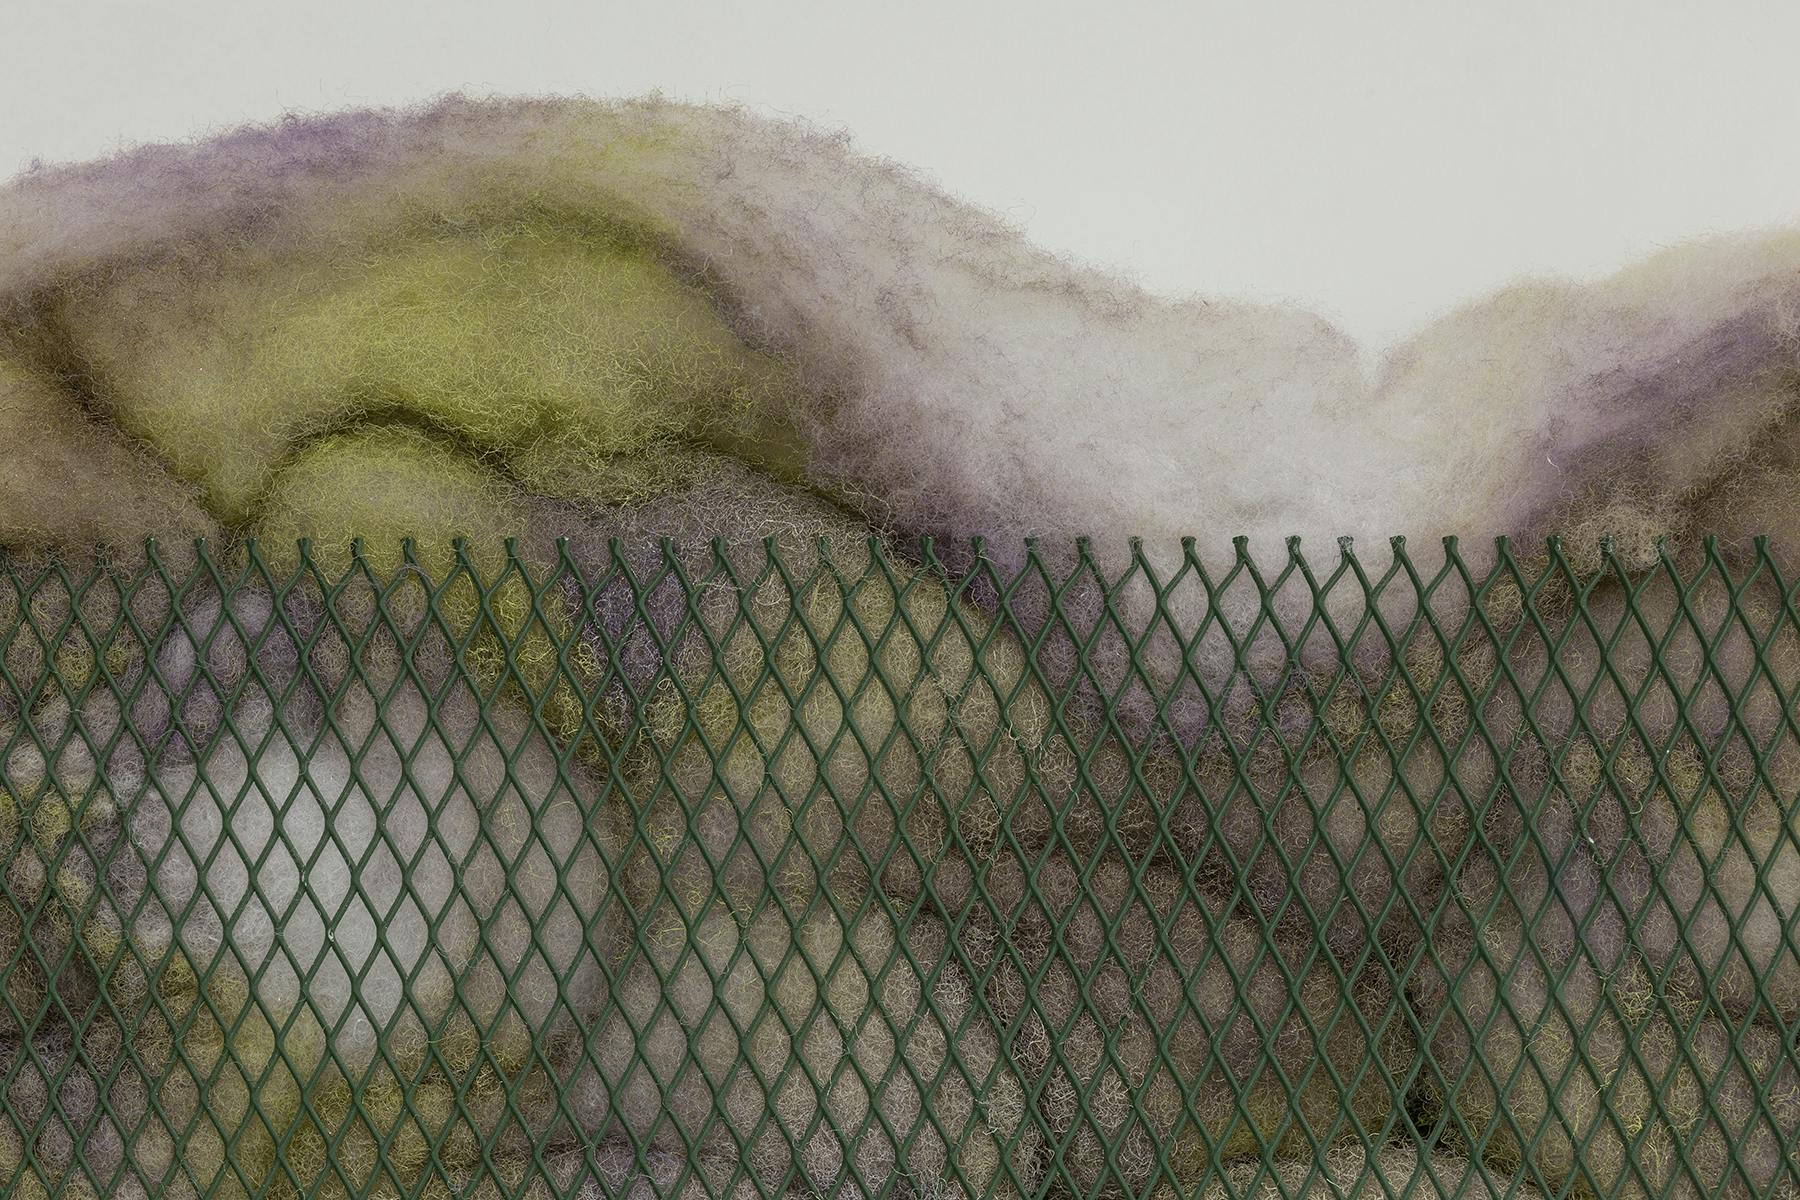 Deserto #345, Alessandro Costanzo, 2021, acrilico su ovatta sintetica e rete metallica, 80 x 55 x 5 cm (dettaglio)